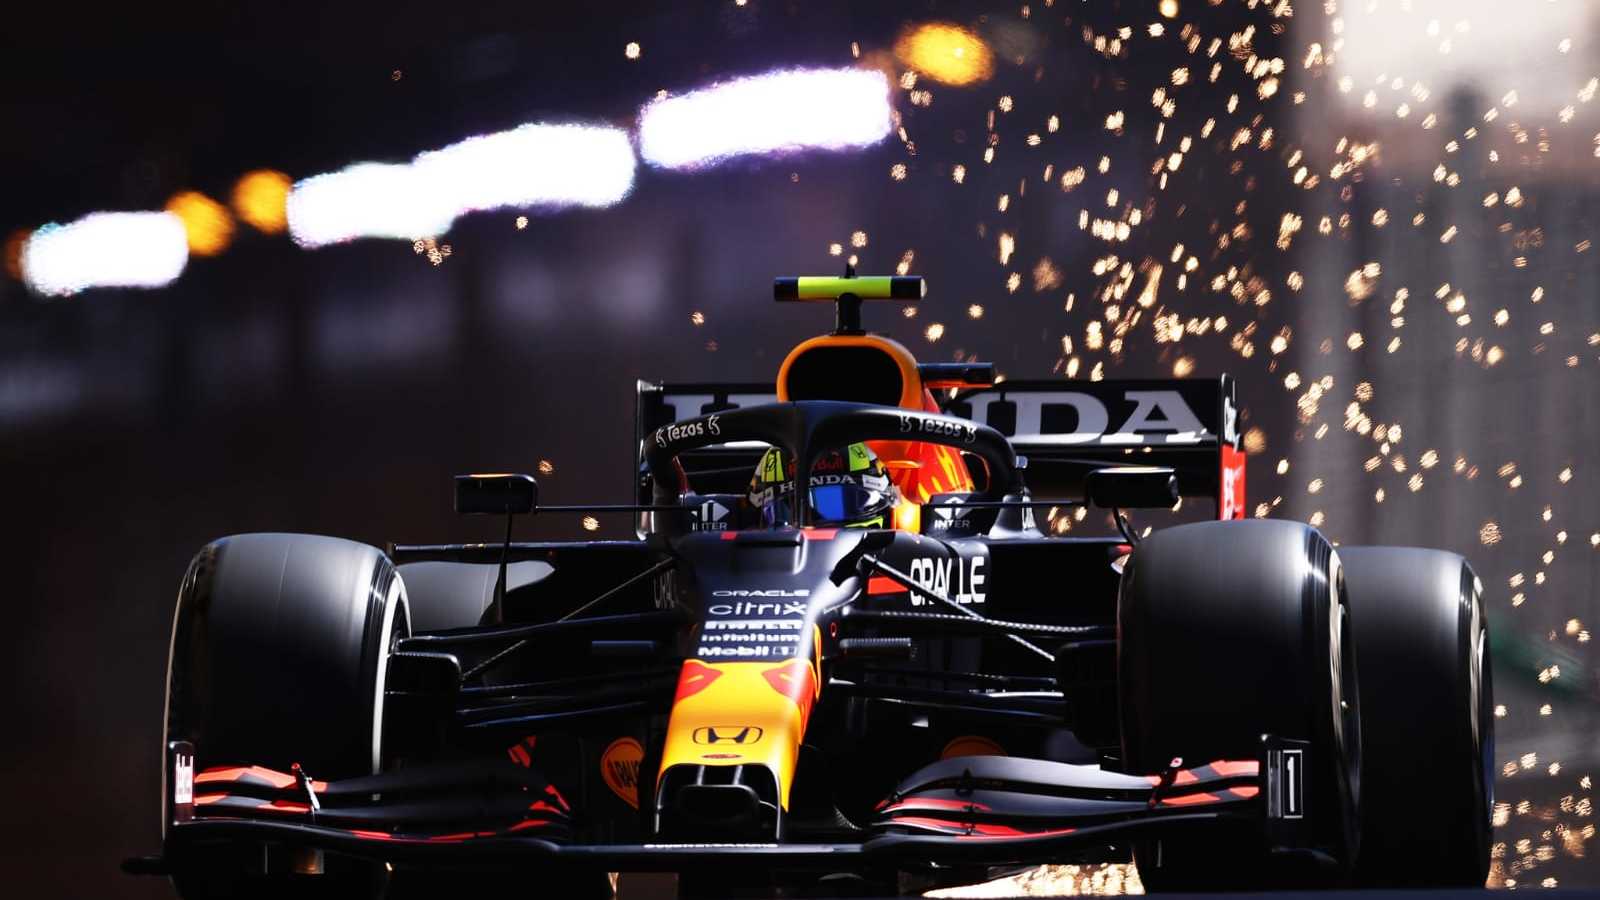 Red Bull sponsor for Formula 1 team - Race car on the road